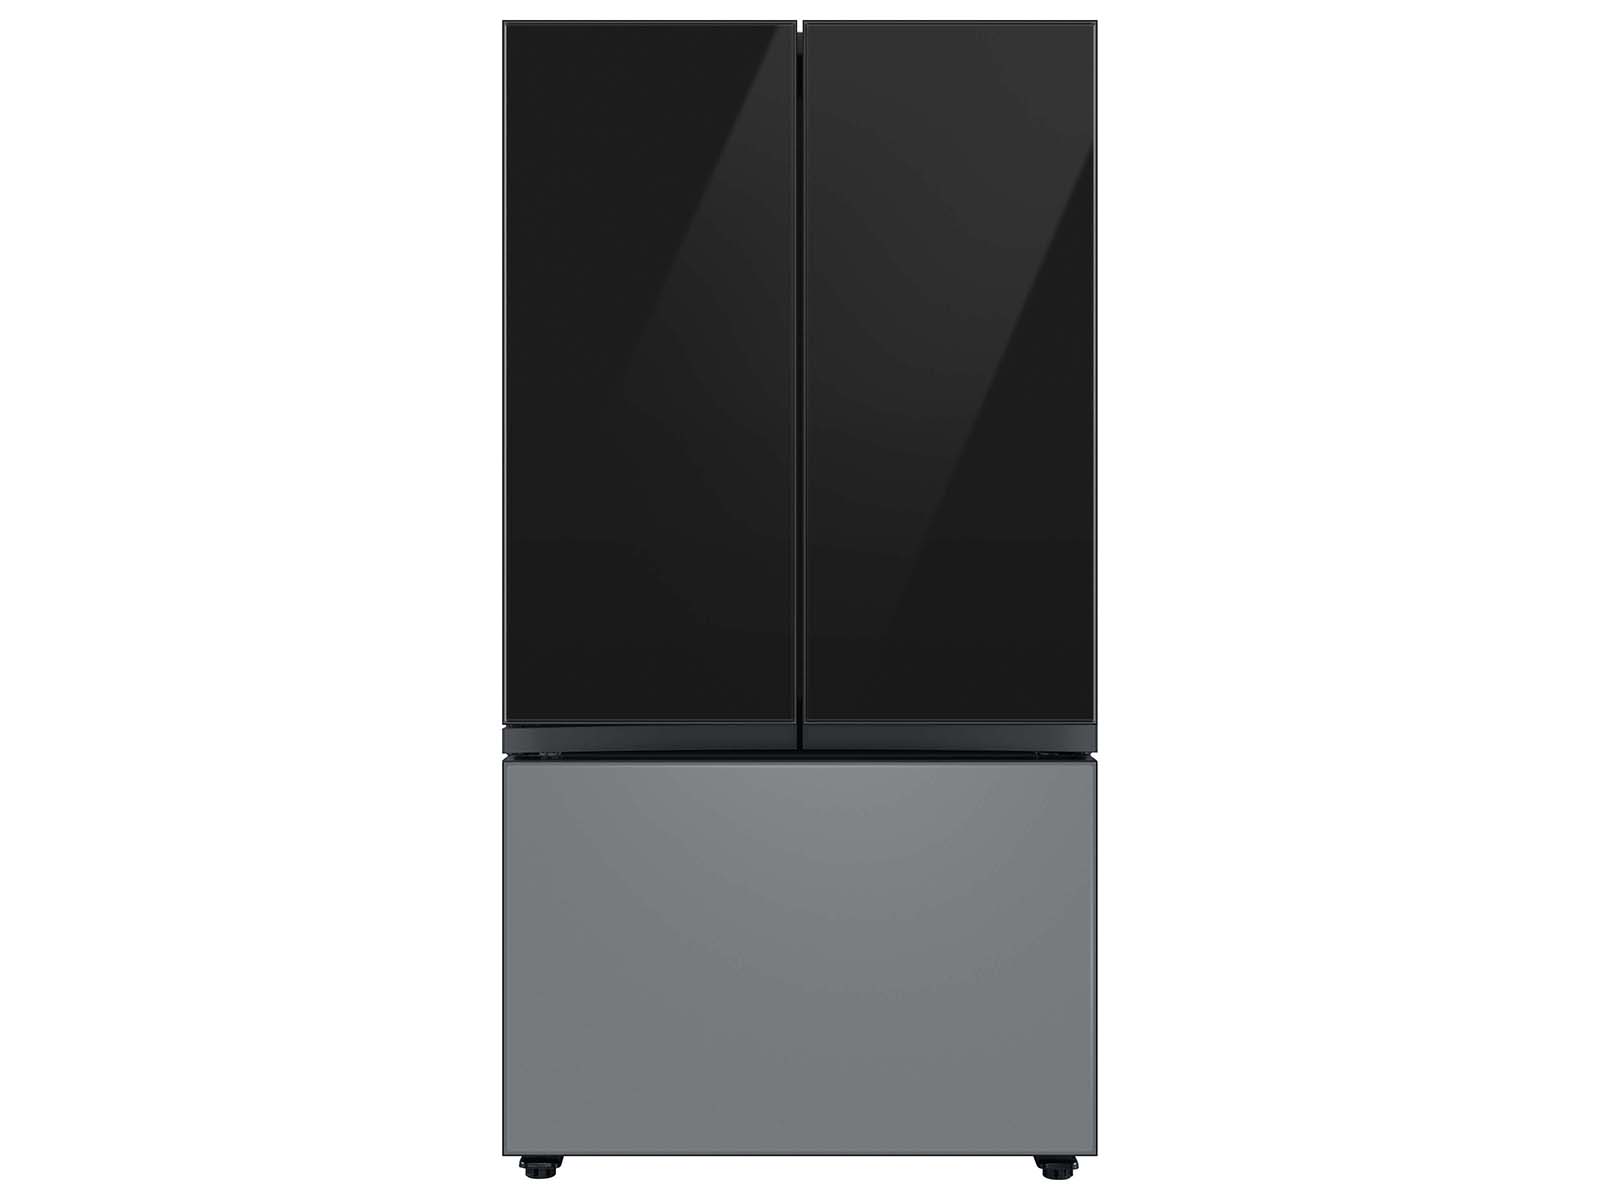 Thumbnail image of Bespoke 3-Door French Door Refrigerator Panel in Matte Grey Glass - Bottom Panel